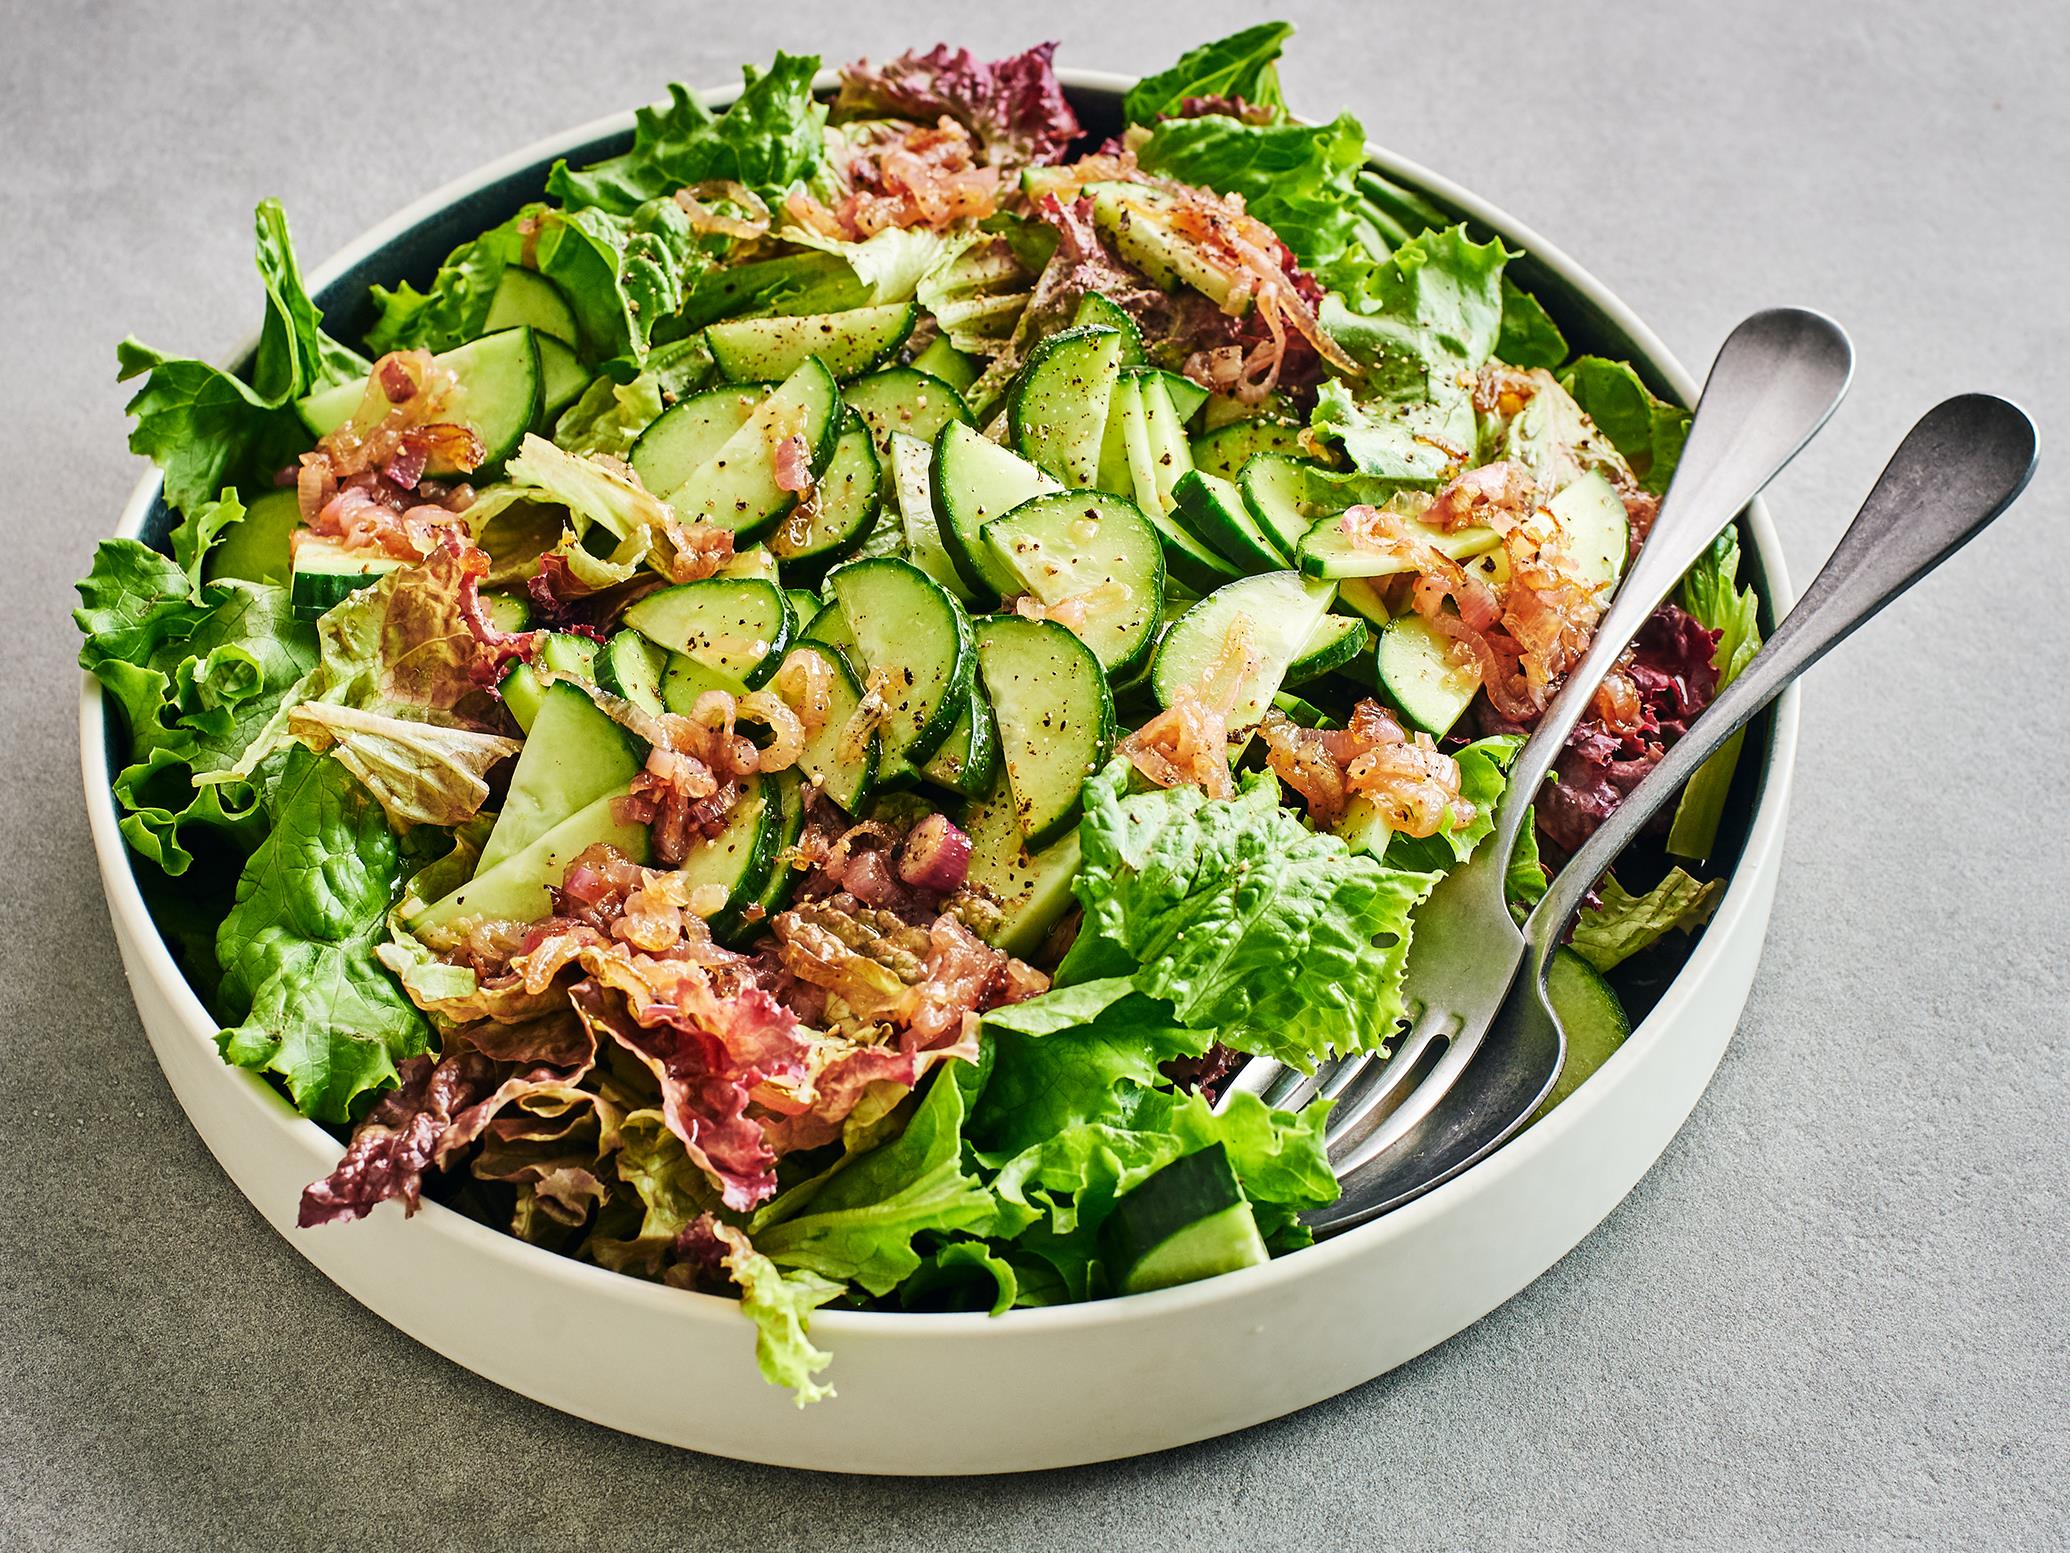 Salade verte, vinaigrette aux échalotes confites